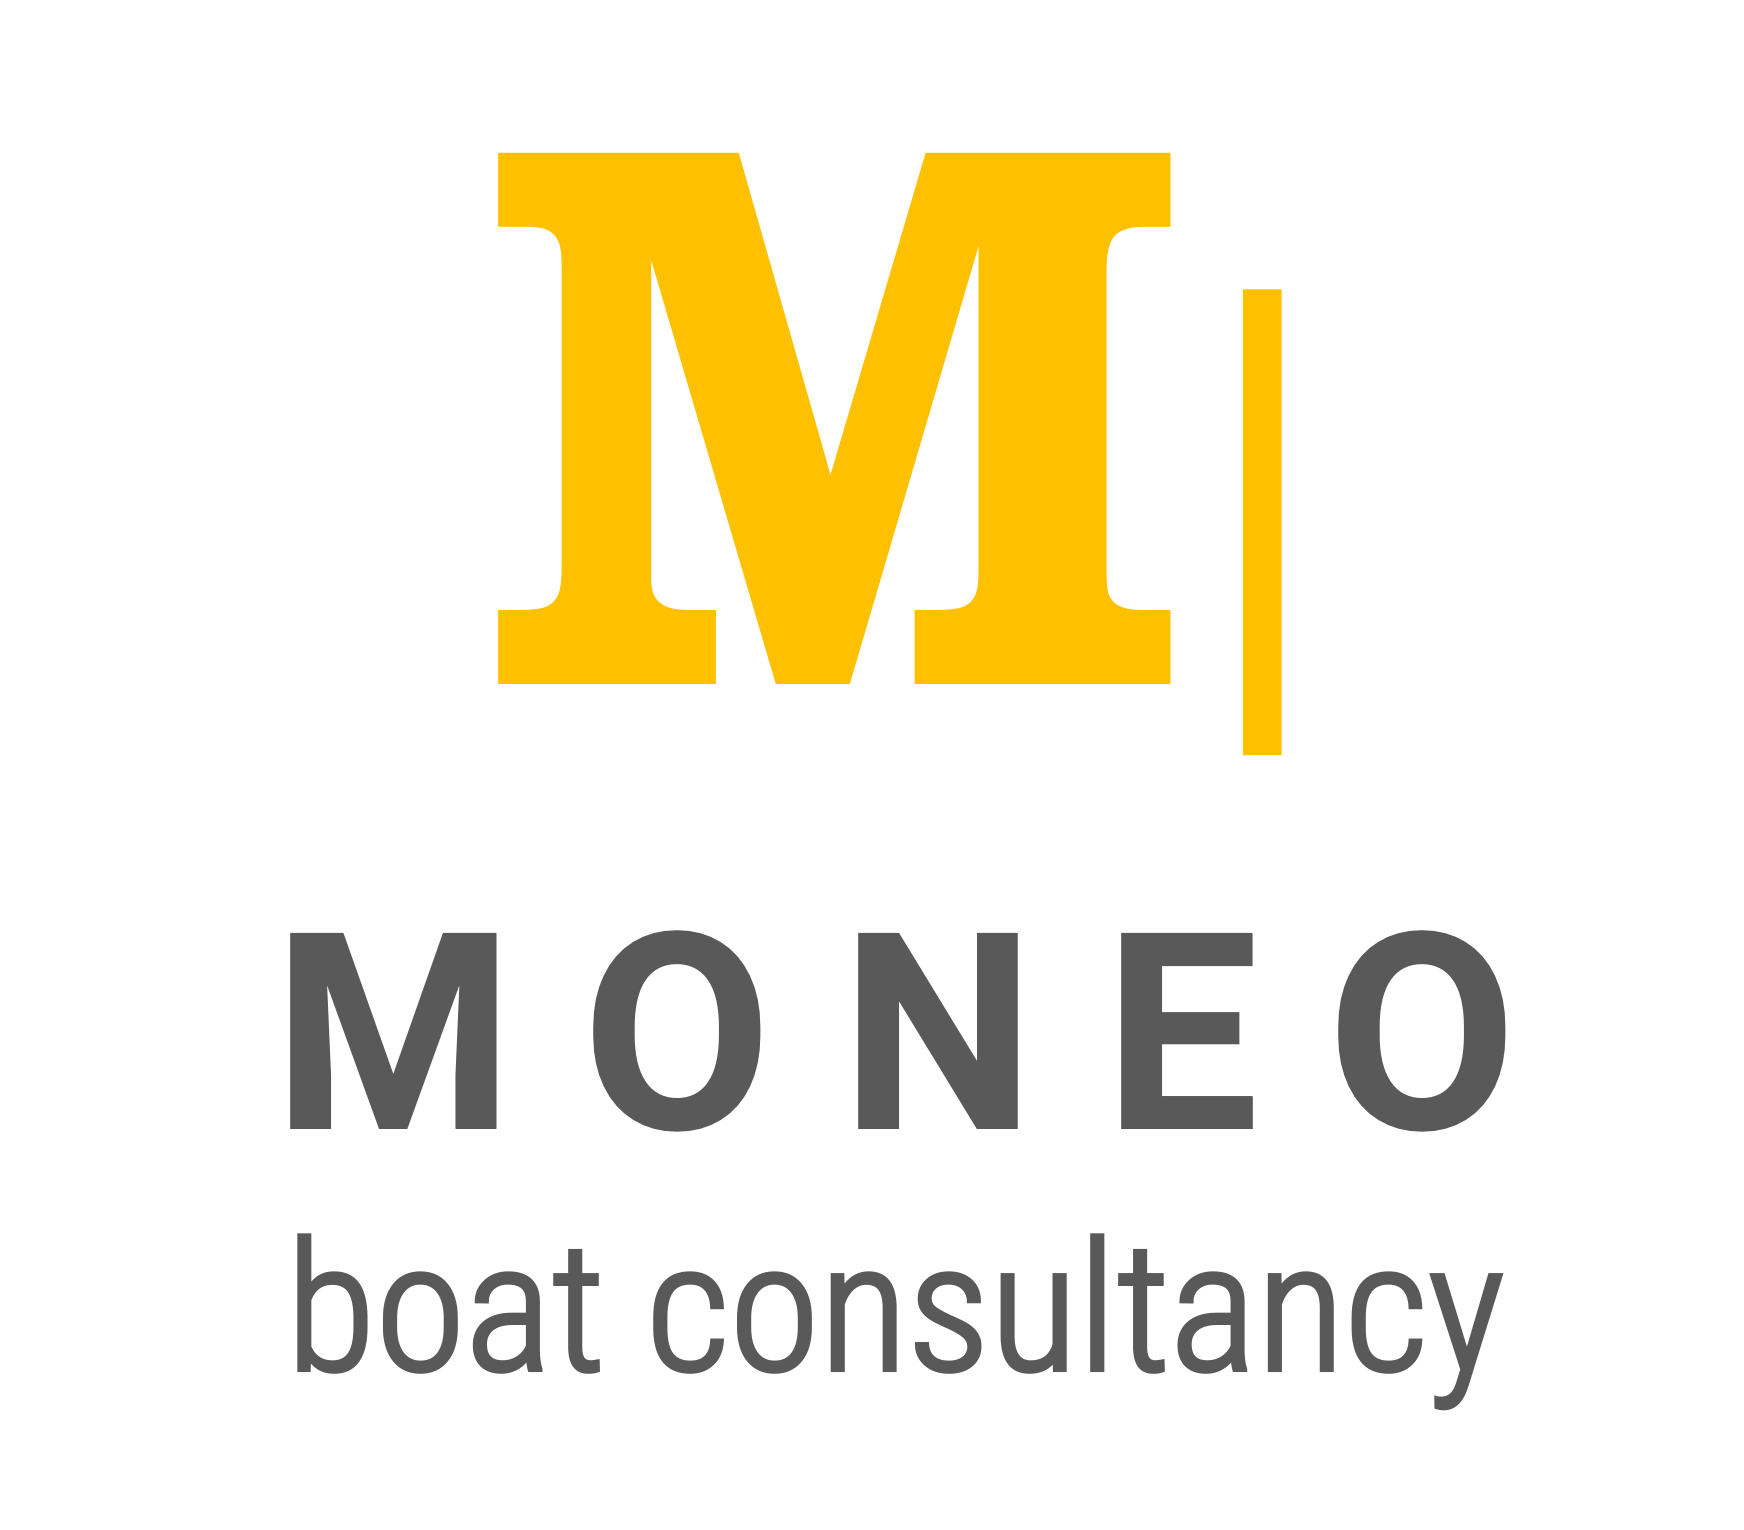 MONEO boat consultancy